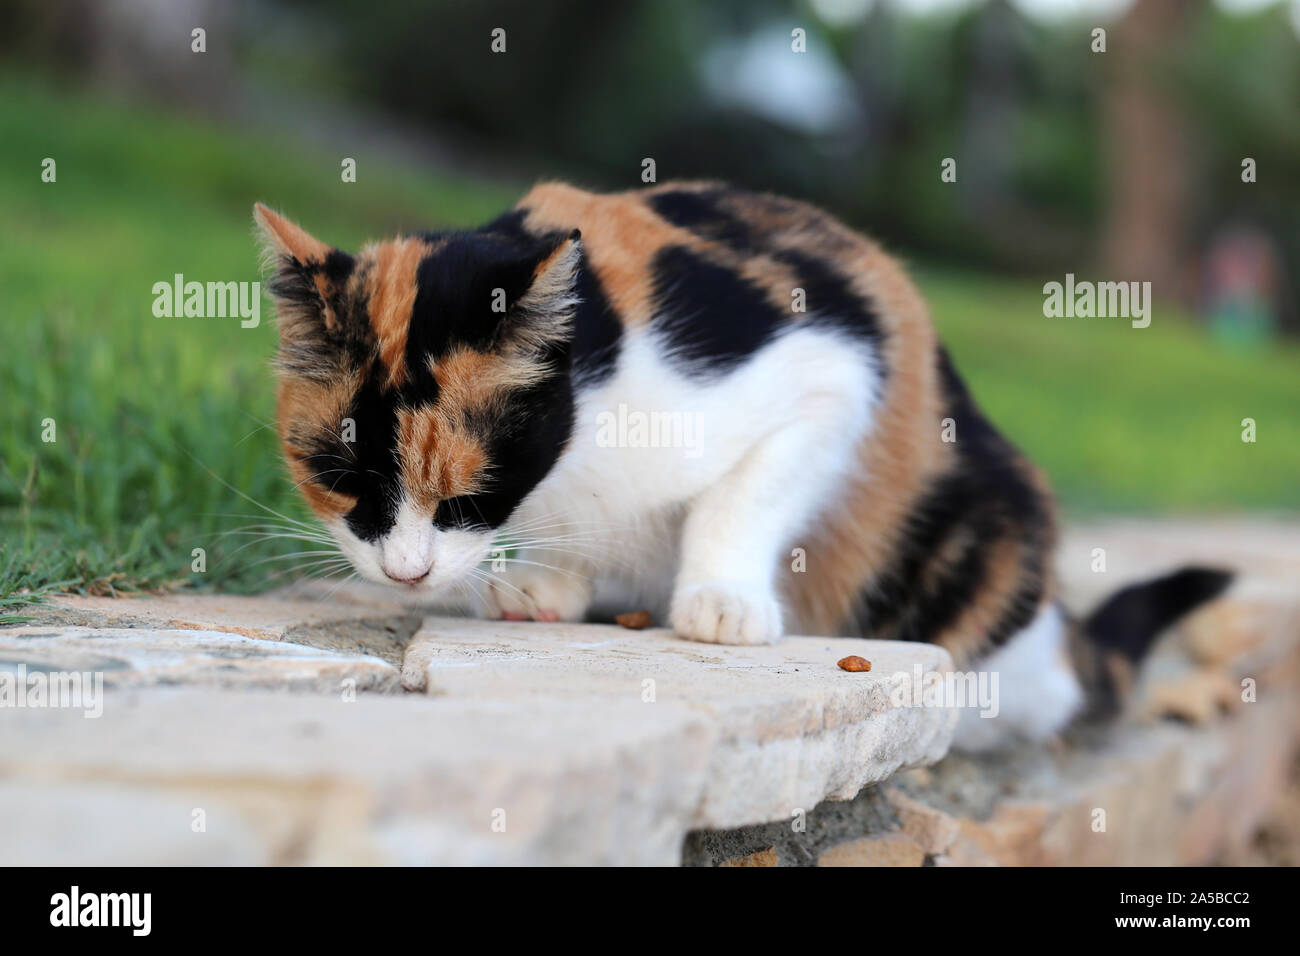 Lindo gato montés fotografiado en la isla de Chipre. Mullidas, peludo  animal. Este gato tiene un hermoso color negro, marrón y blanco de tonos de  piel suave. Gato de alerta Fotografía de